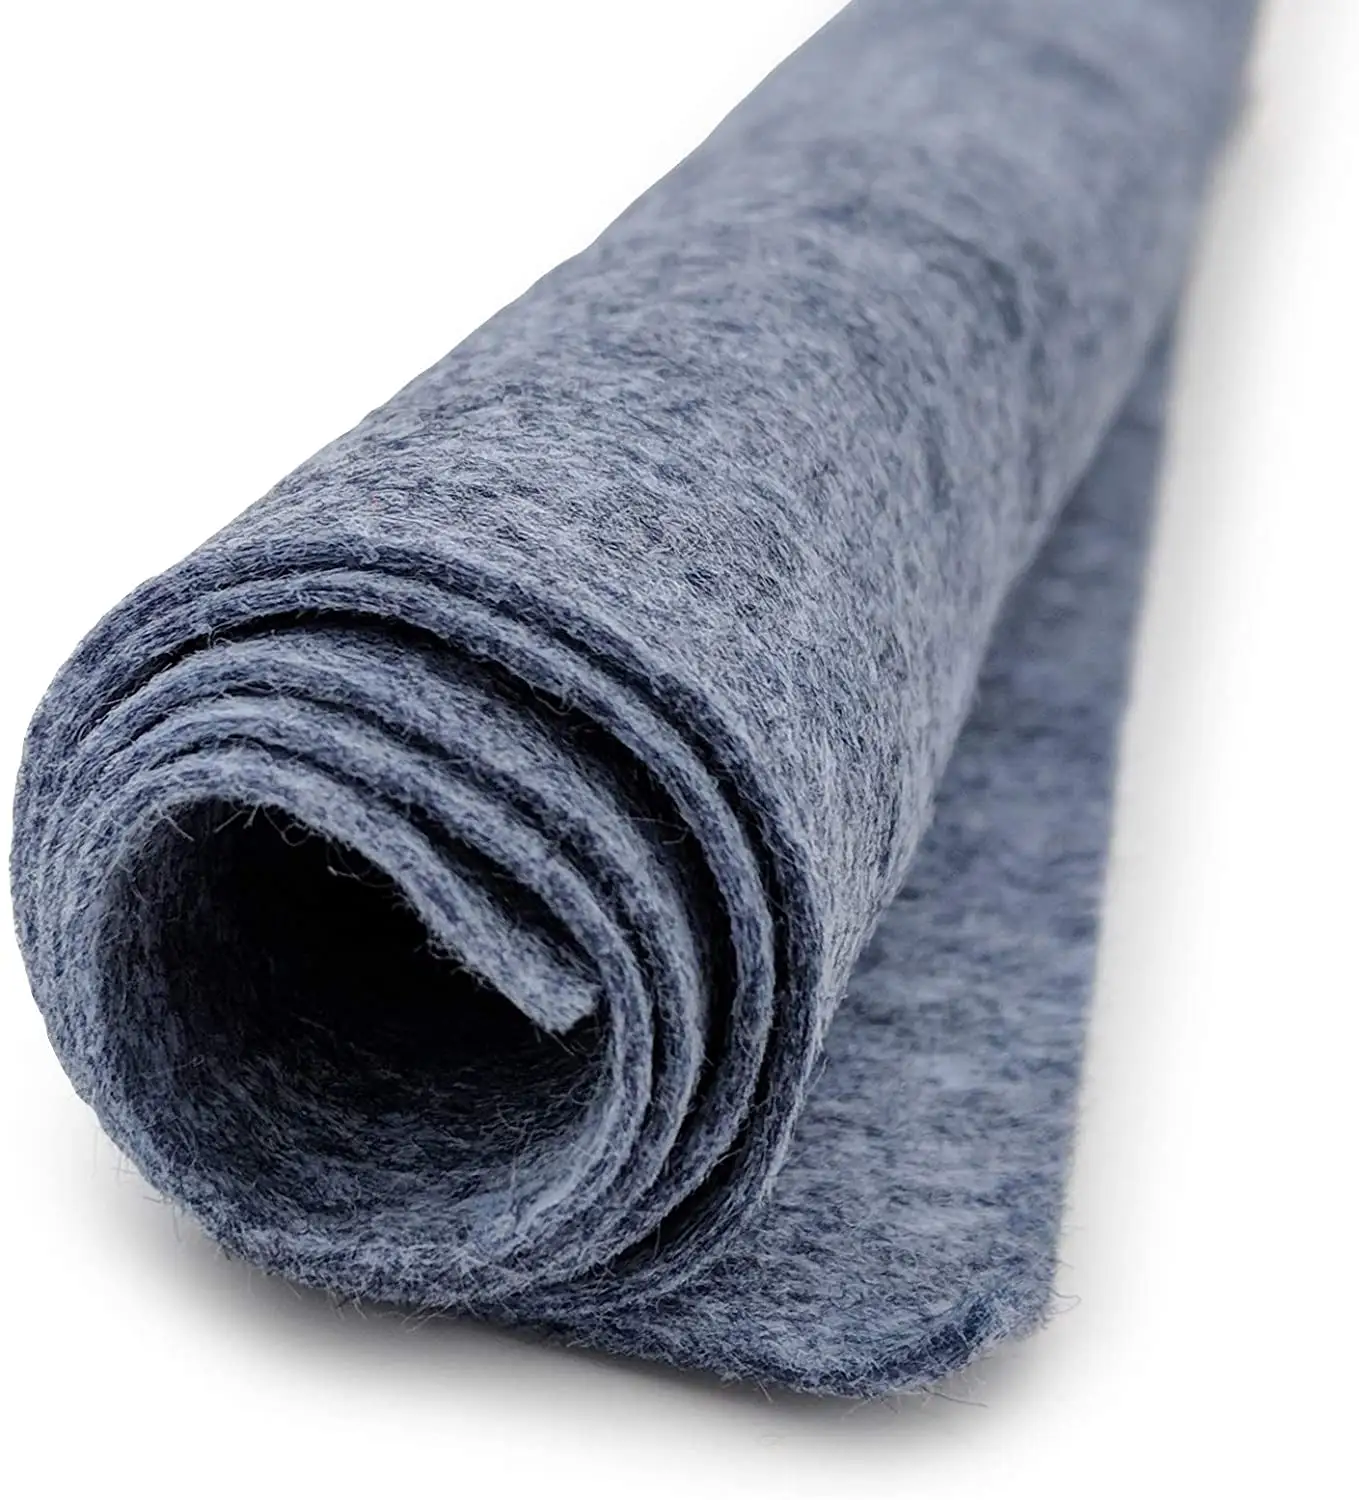 Groothandel Kleurrijke Naaldvilt 3Mm 5Mm Dik 100% Merino Wol Vilt Stof Roll Australische Industriële Natuurlijke Witte Wol vilt